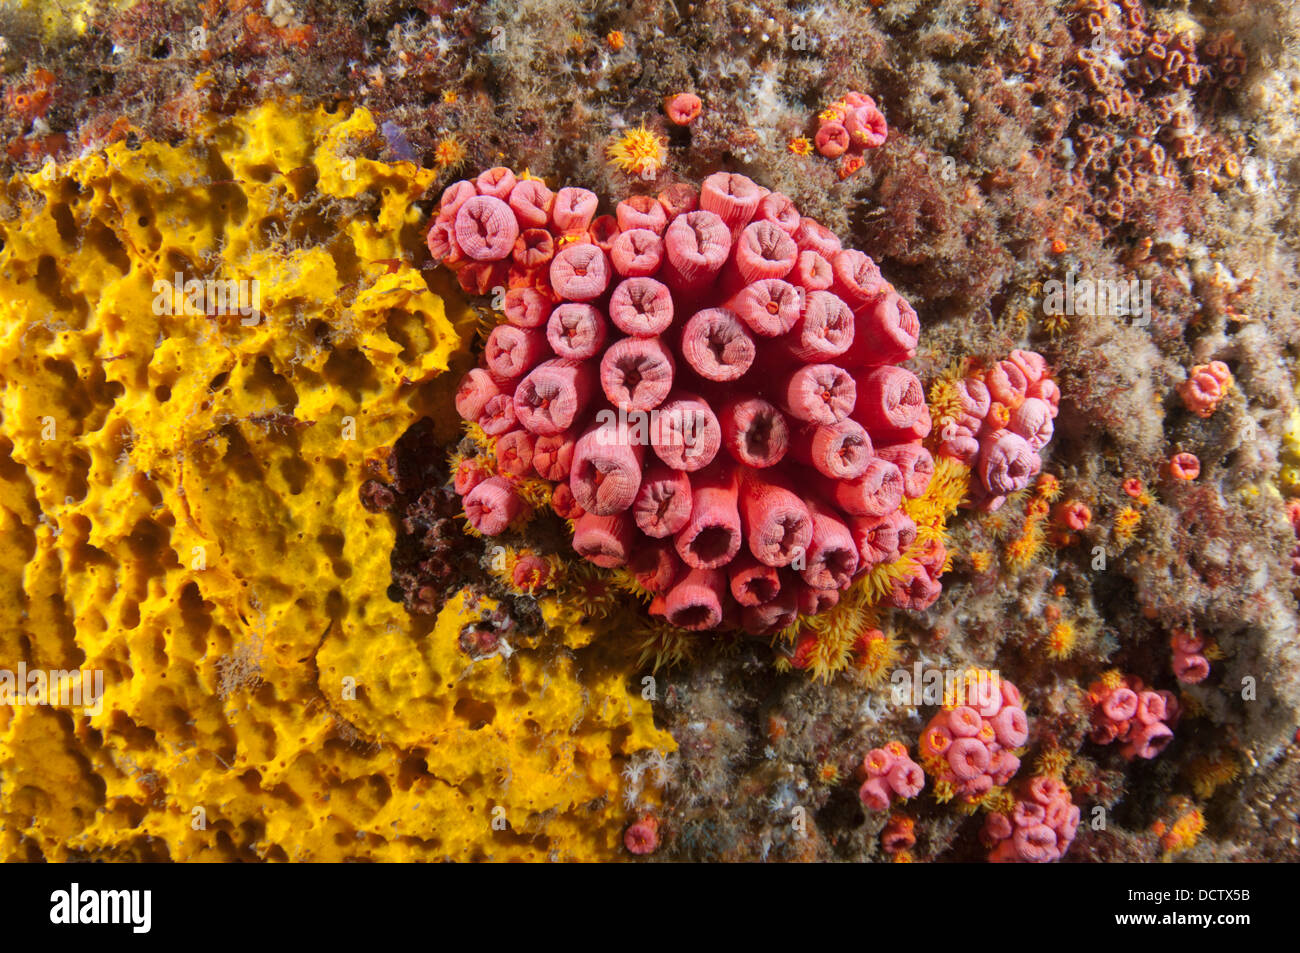 tubastrea sun coral invader species at Arraial do Cabo, Rio de Janeiro, Brazil Stock Photo